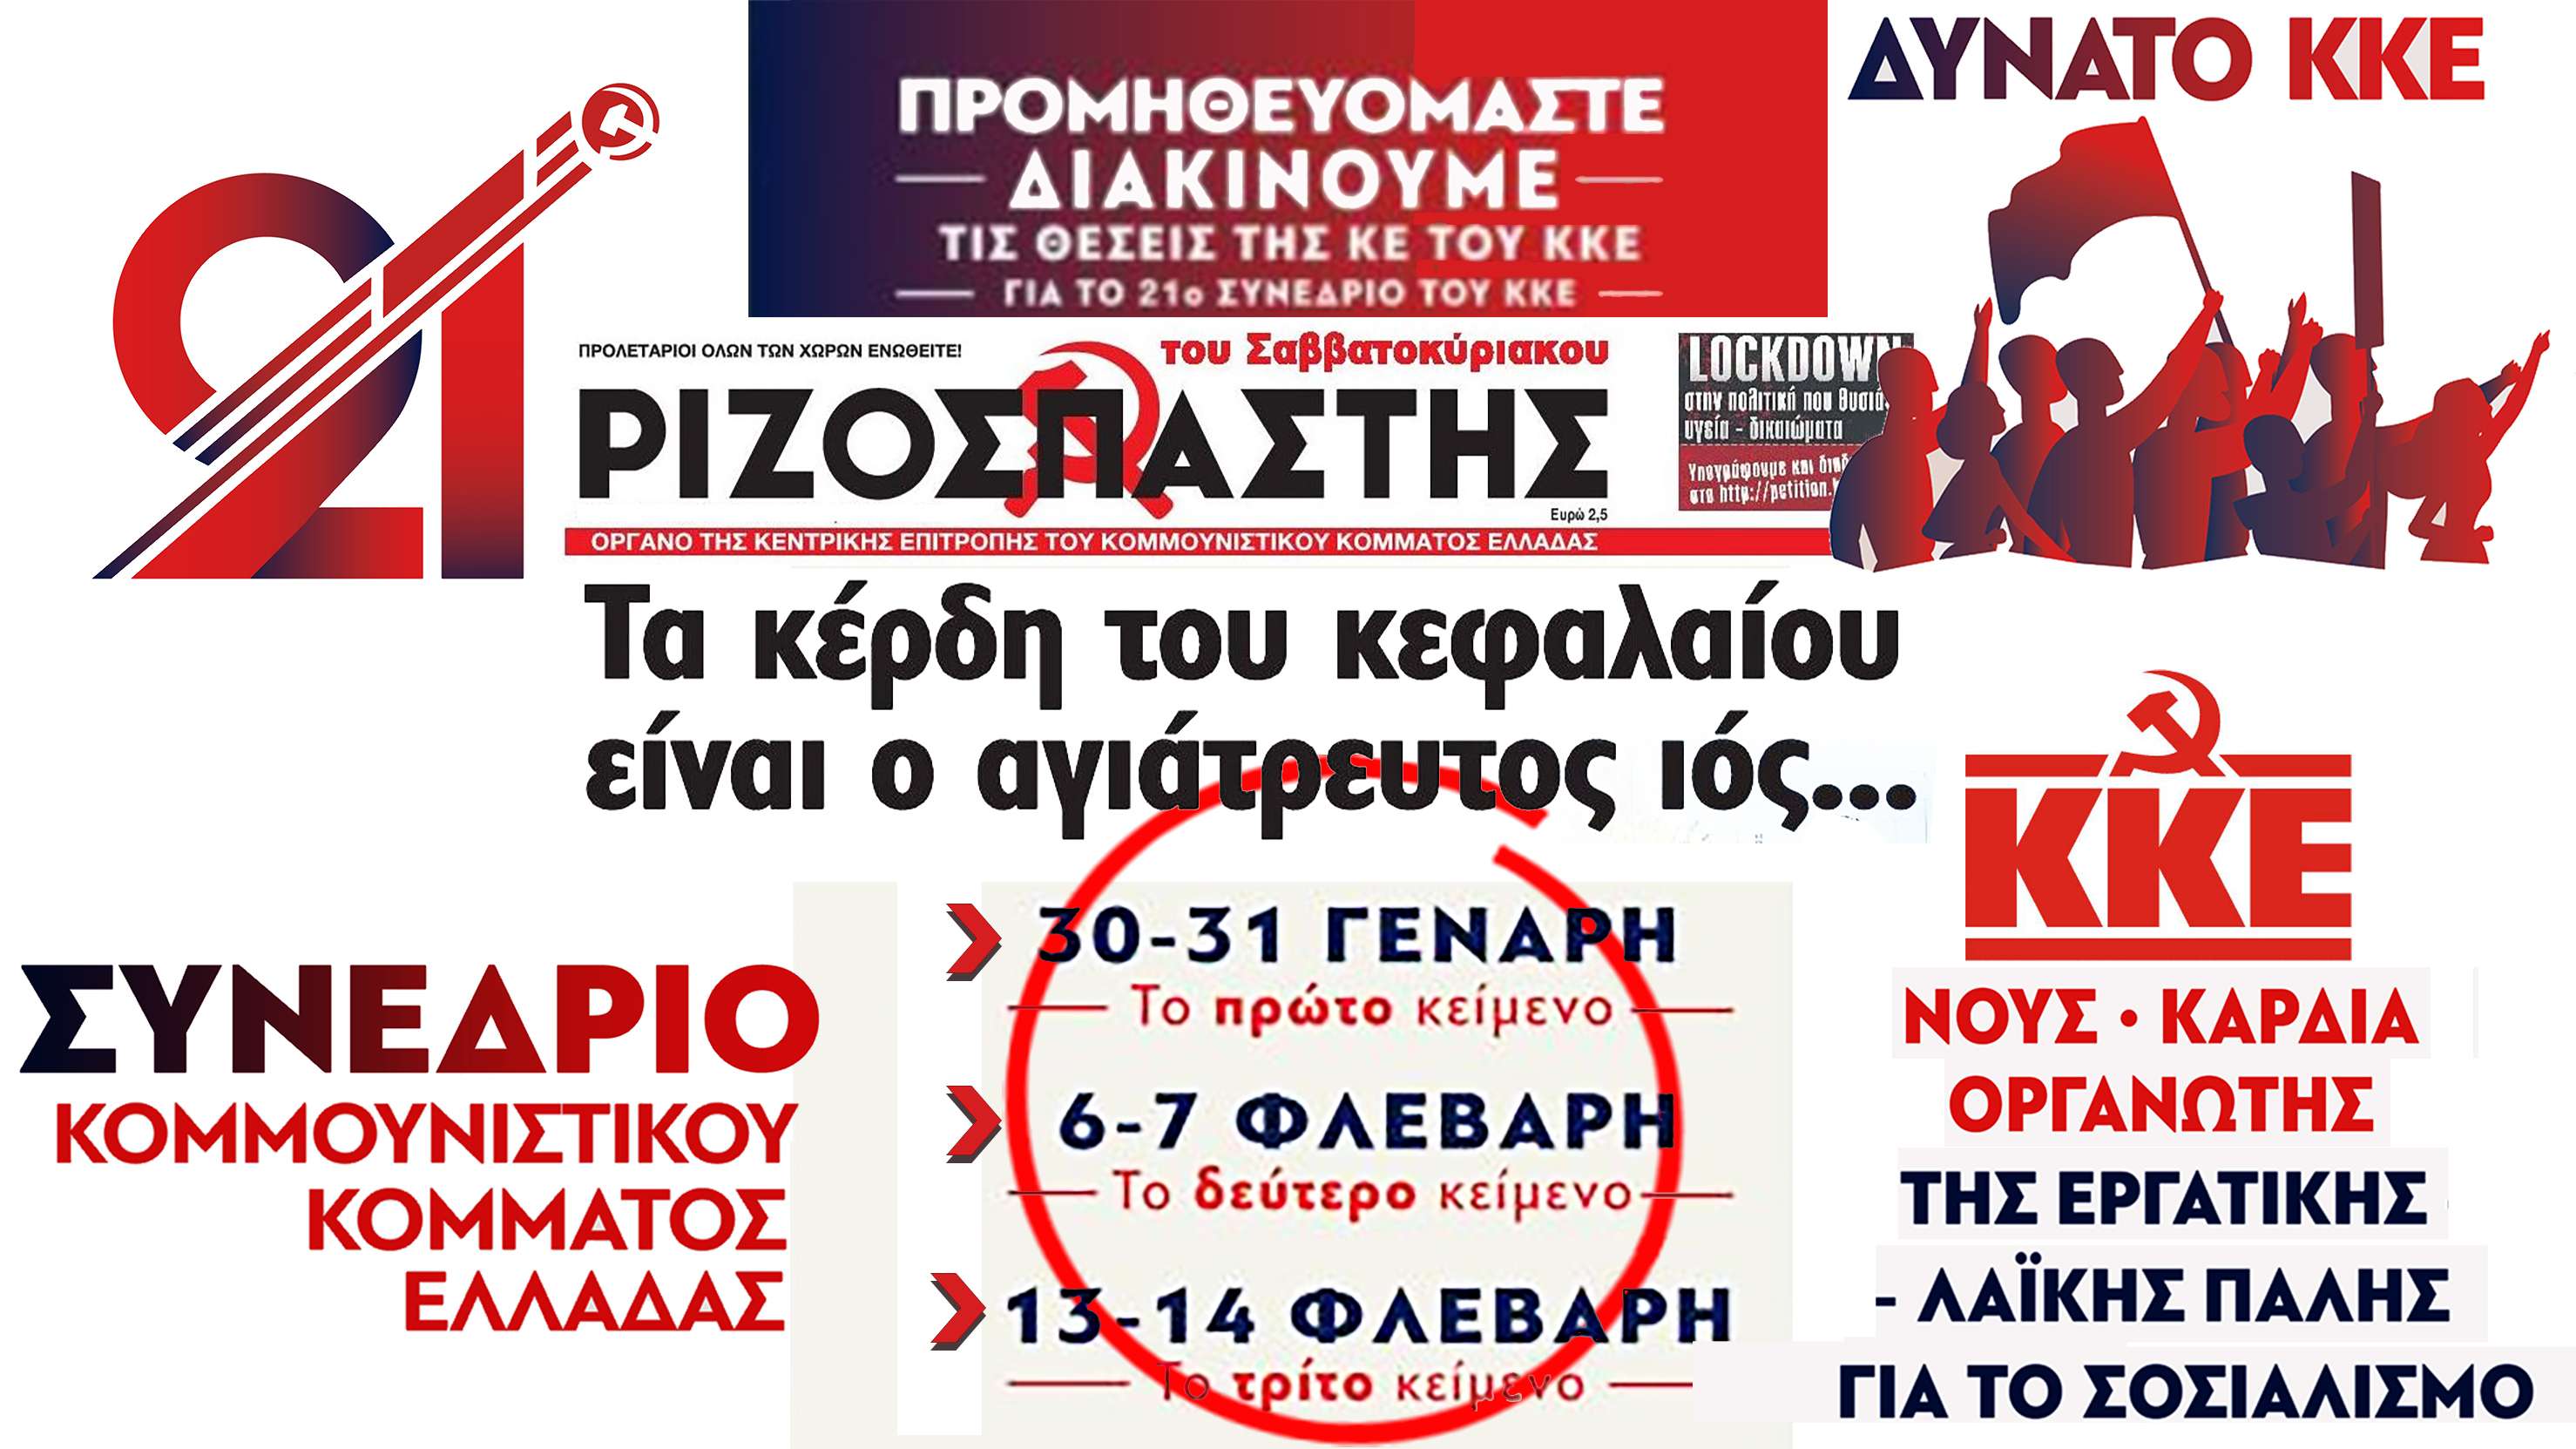 21ο Συνέδριο ΚΚΕ 21 synedrio KKE poster Ριζοσπάστης Rizospastis